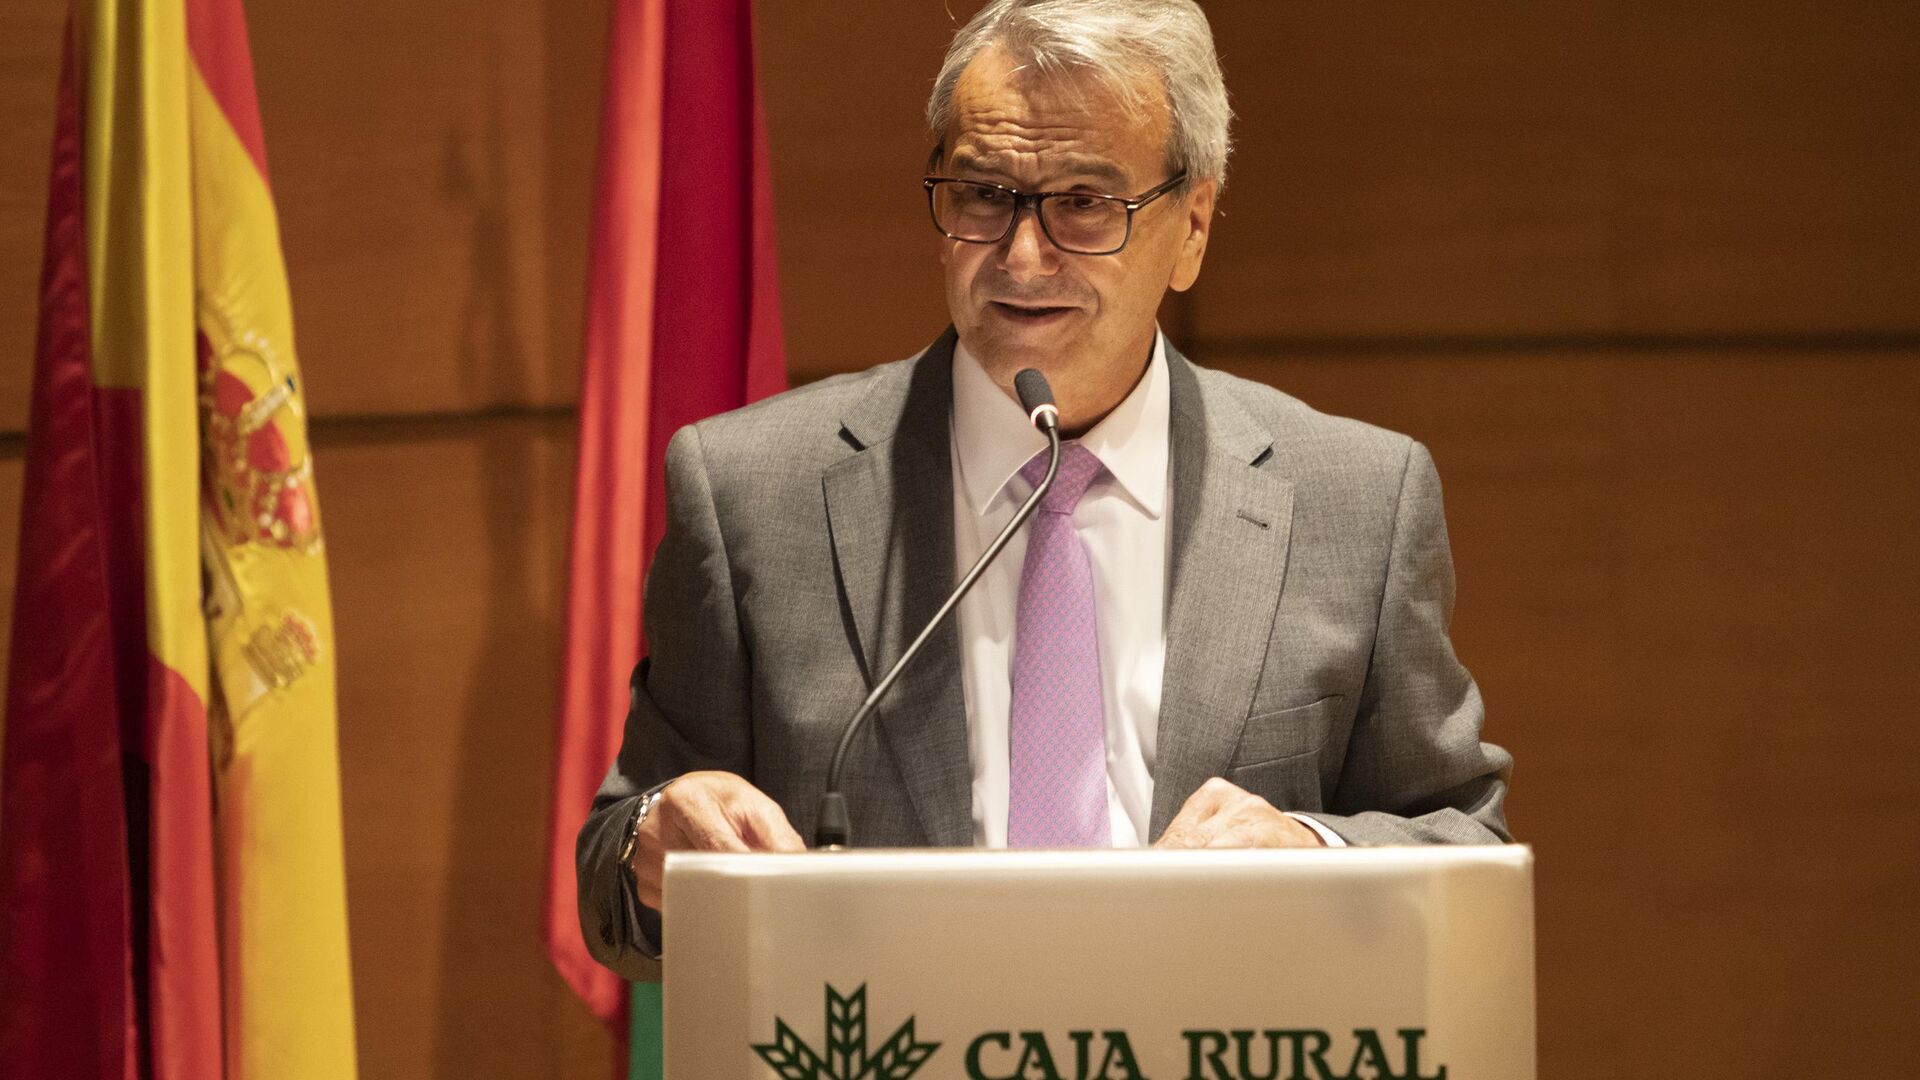 Fotos del Premio Ciencias de la Salud-Fundaci&oacute;n Caja Rural Granada de 2021